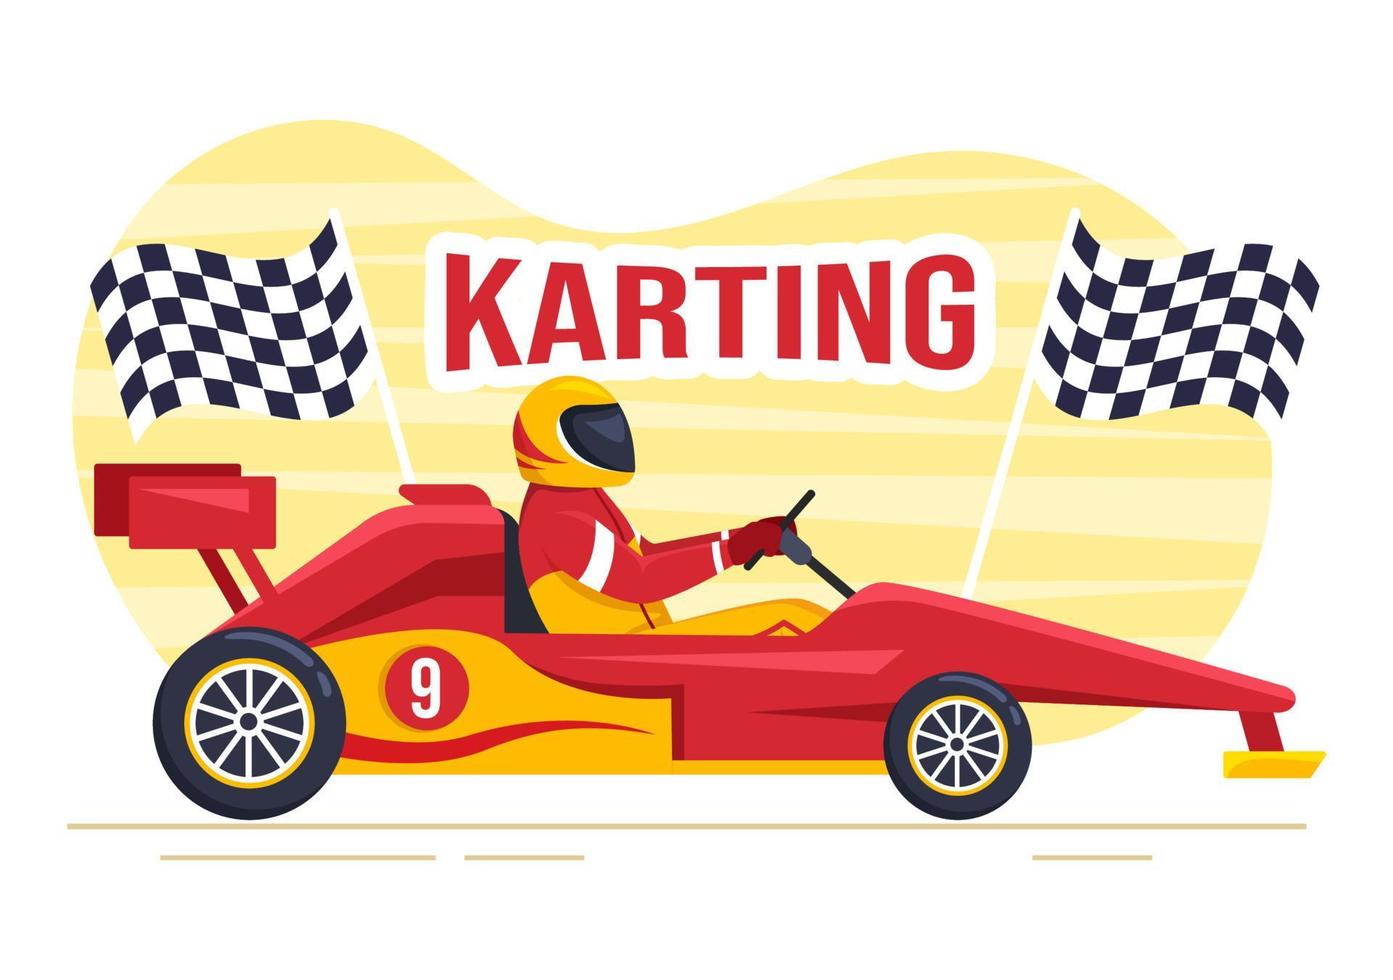 kartsport mit rennspiel go kart oder miniauto auf kleiner rennstrecke in flacher handgezeichneter karikaturschablonenillustration vektor